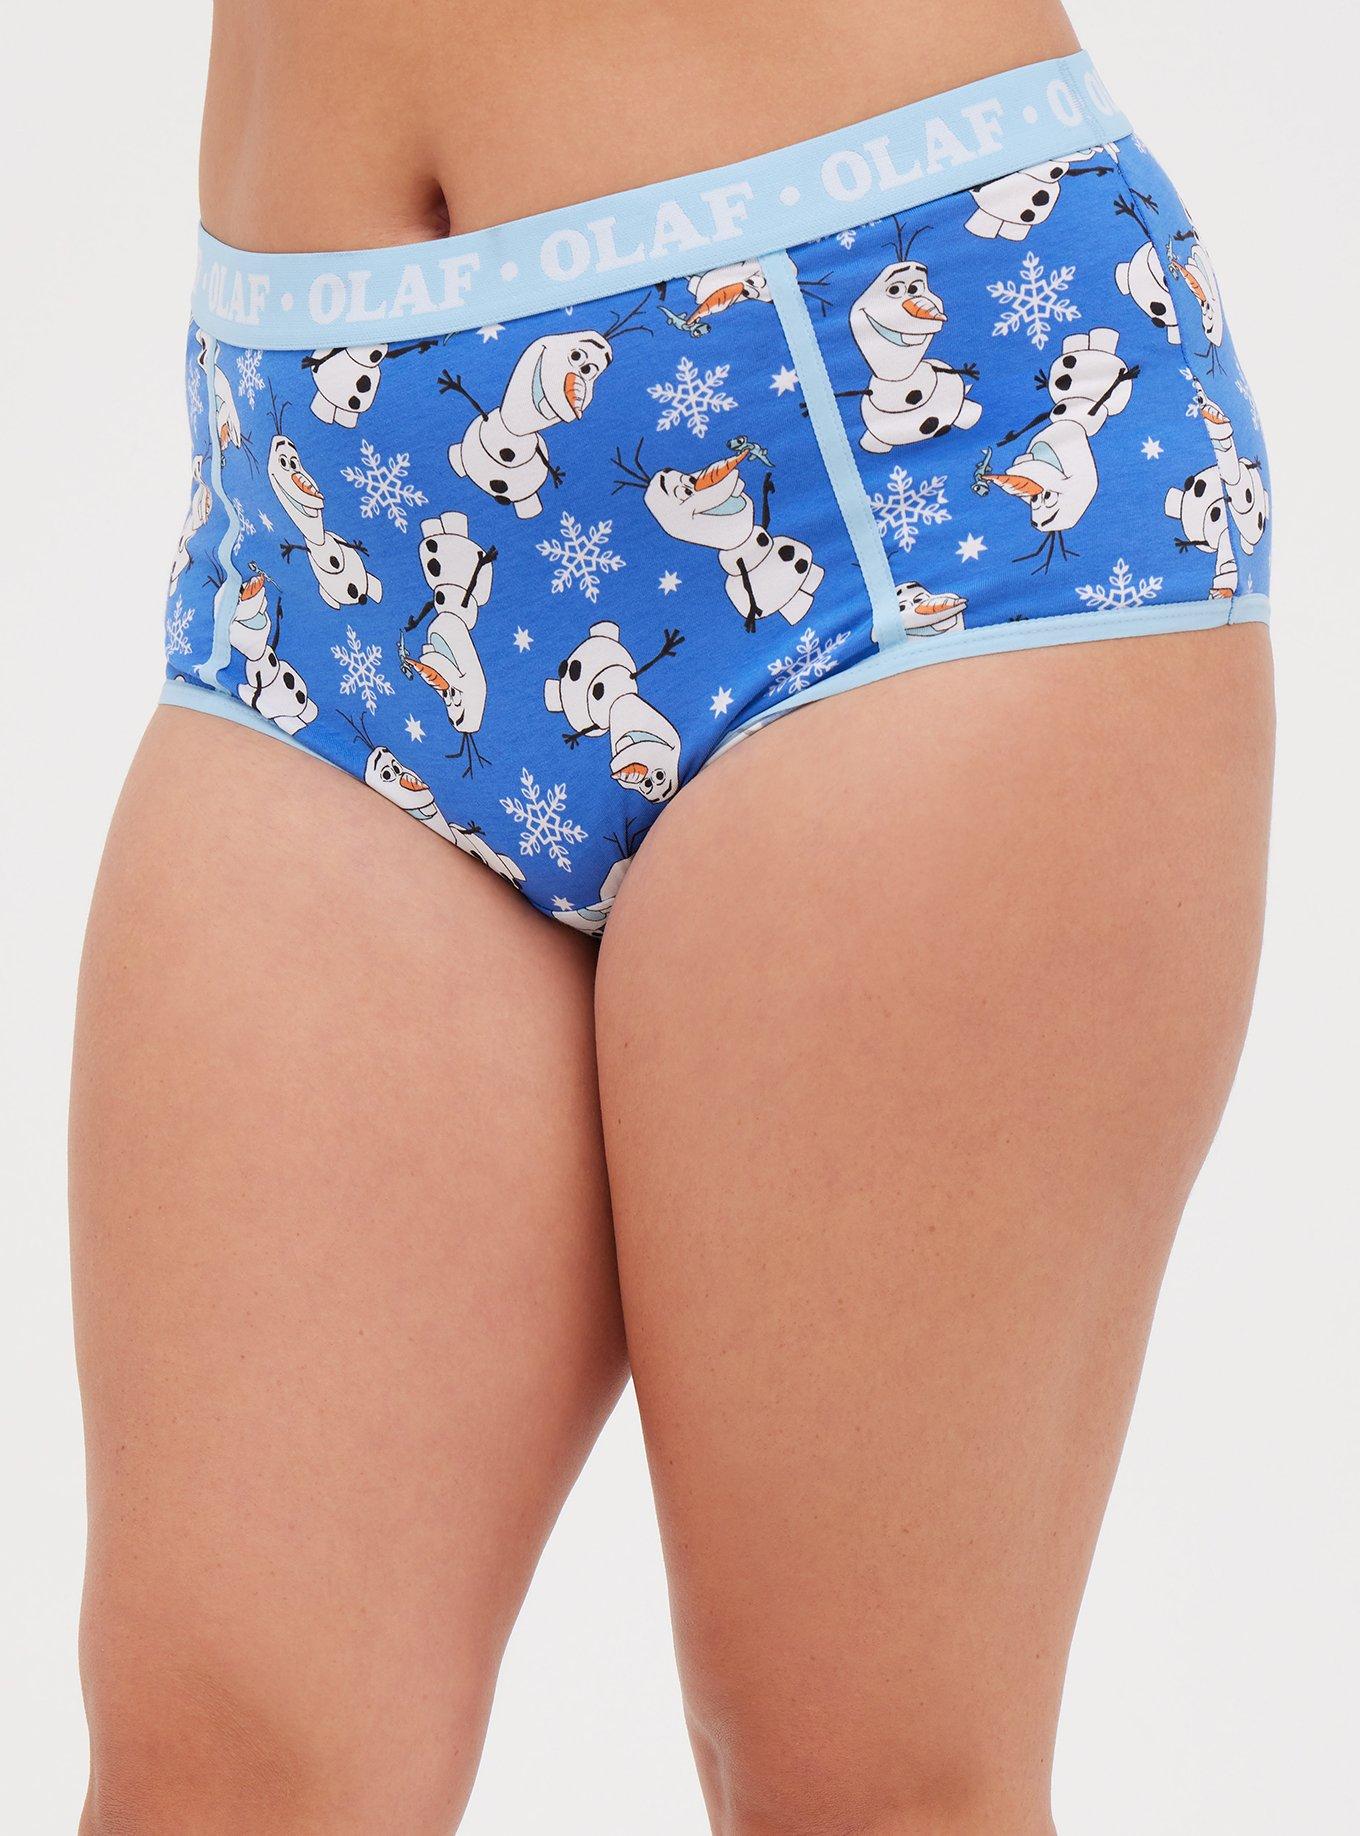 Buy Disney Girls Knickers, Frozen Girls' Underwear